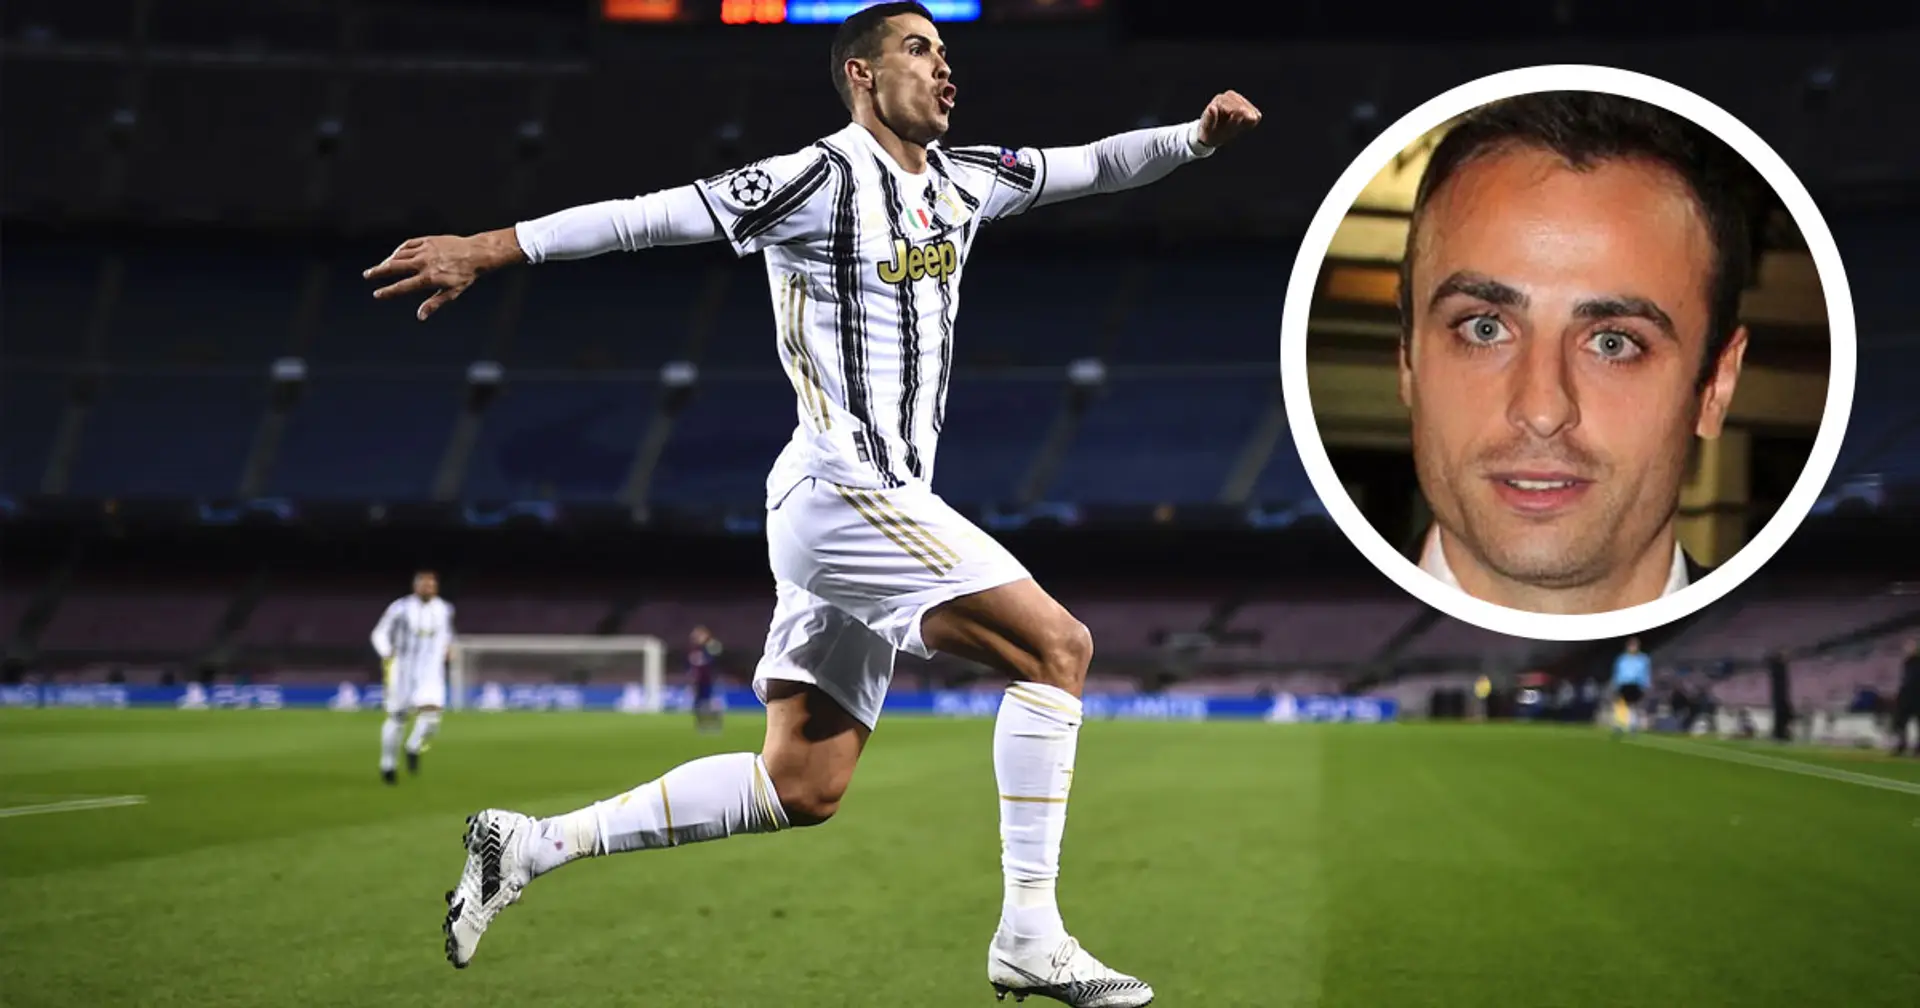 "Allenarsi con Ronaldo? È come andare in guerra!": l'ex compagno Berbatov racconta la mentalità del portoghese